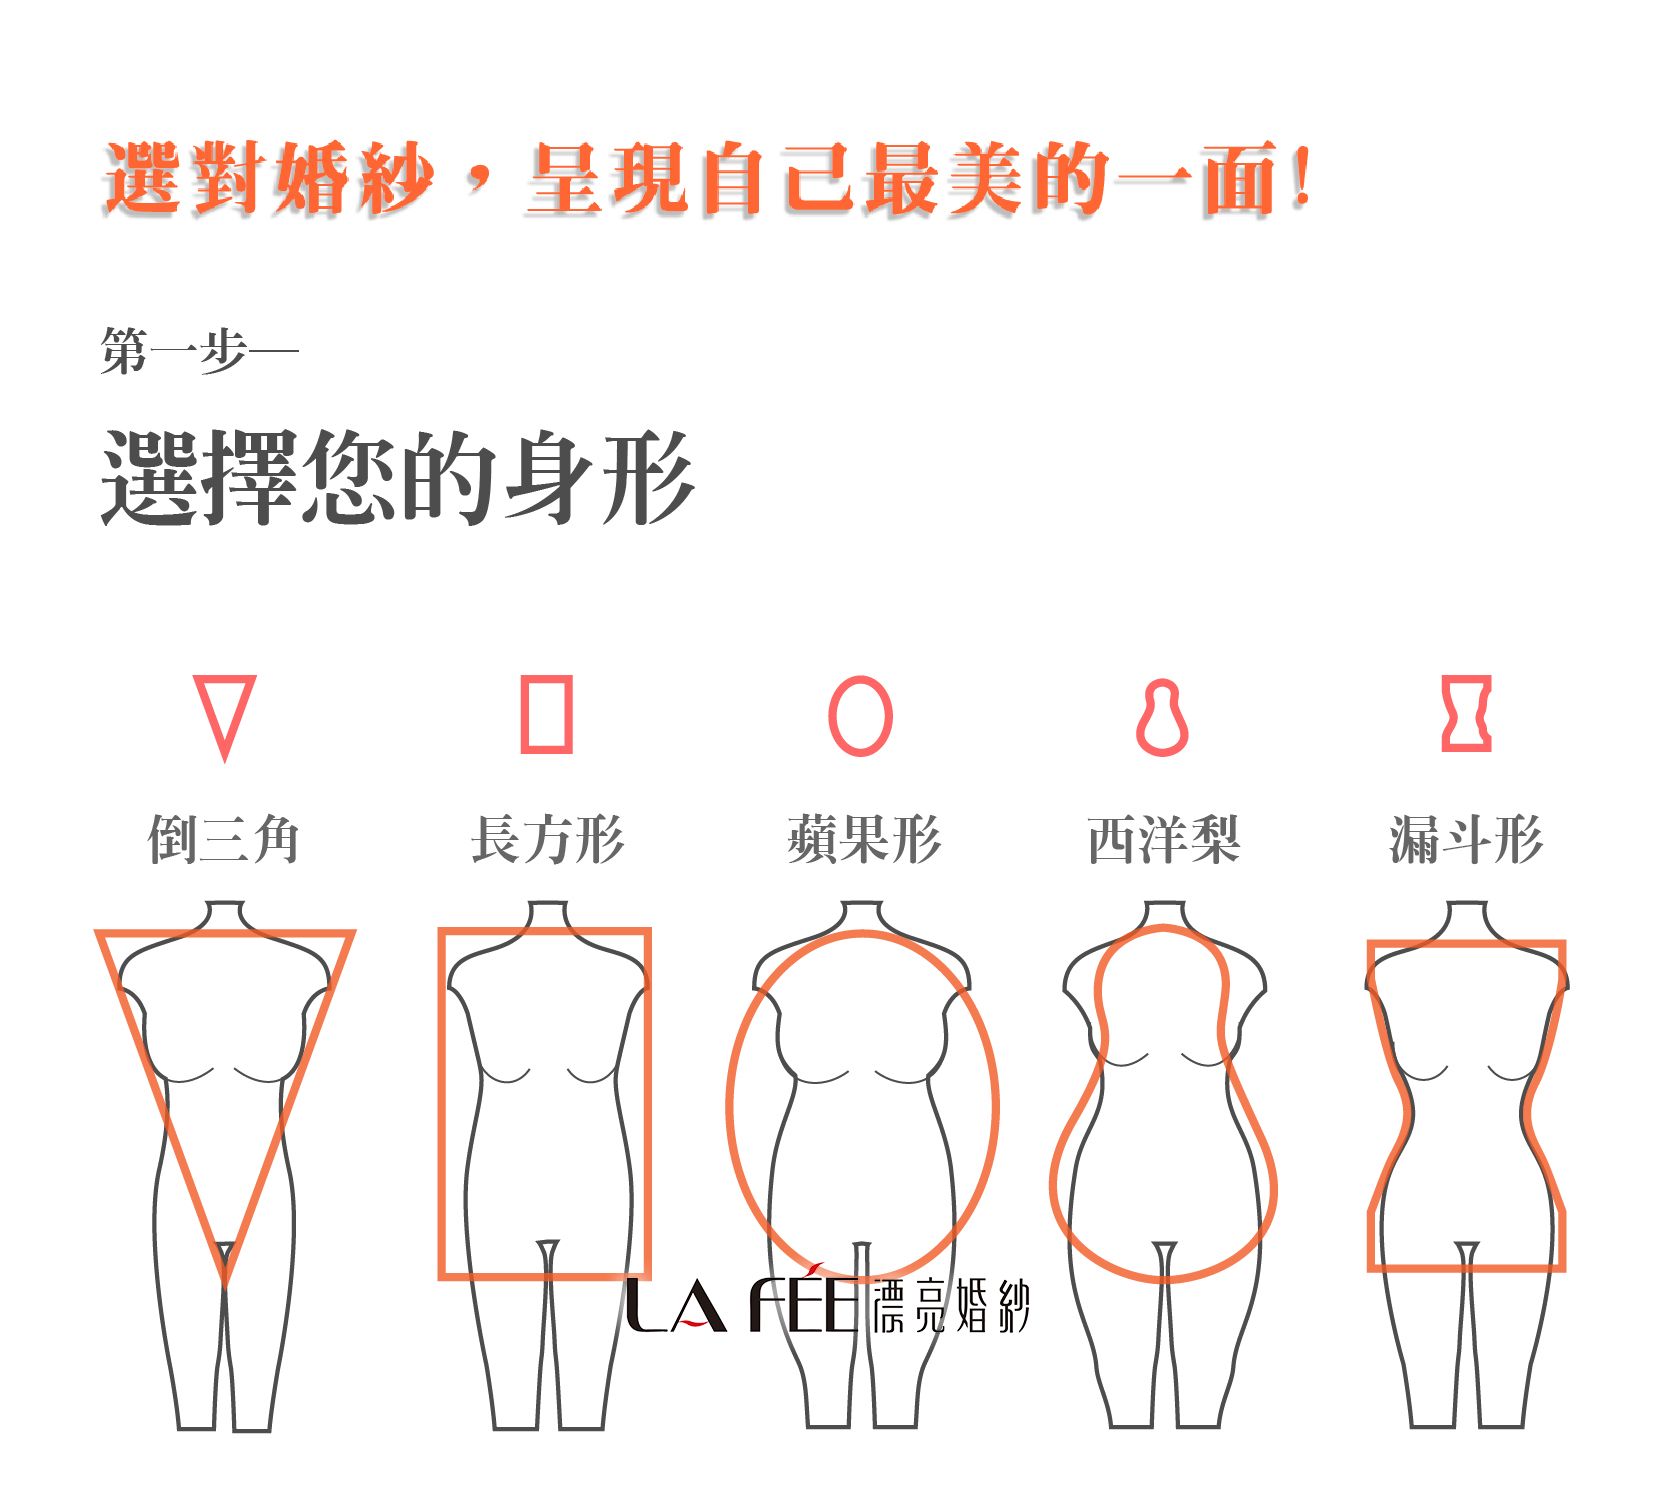 客人挑選禮服須知(圖1)